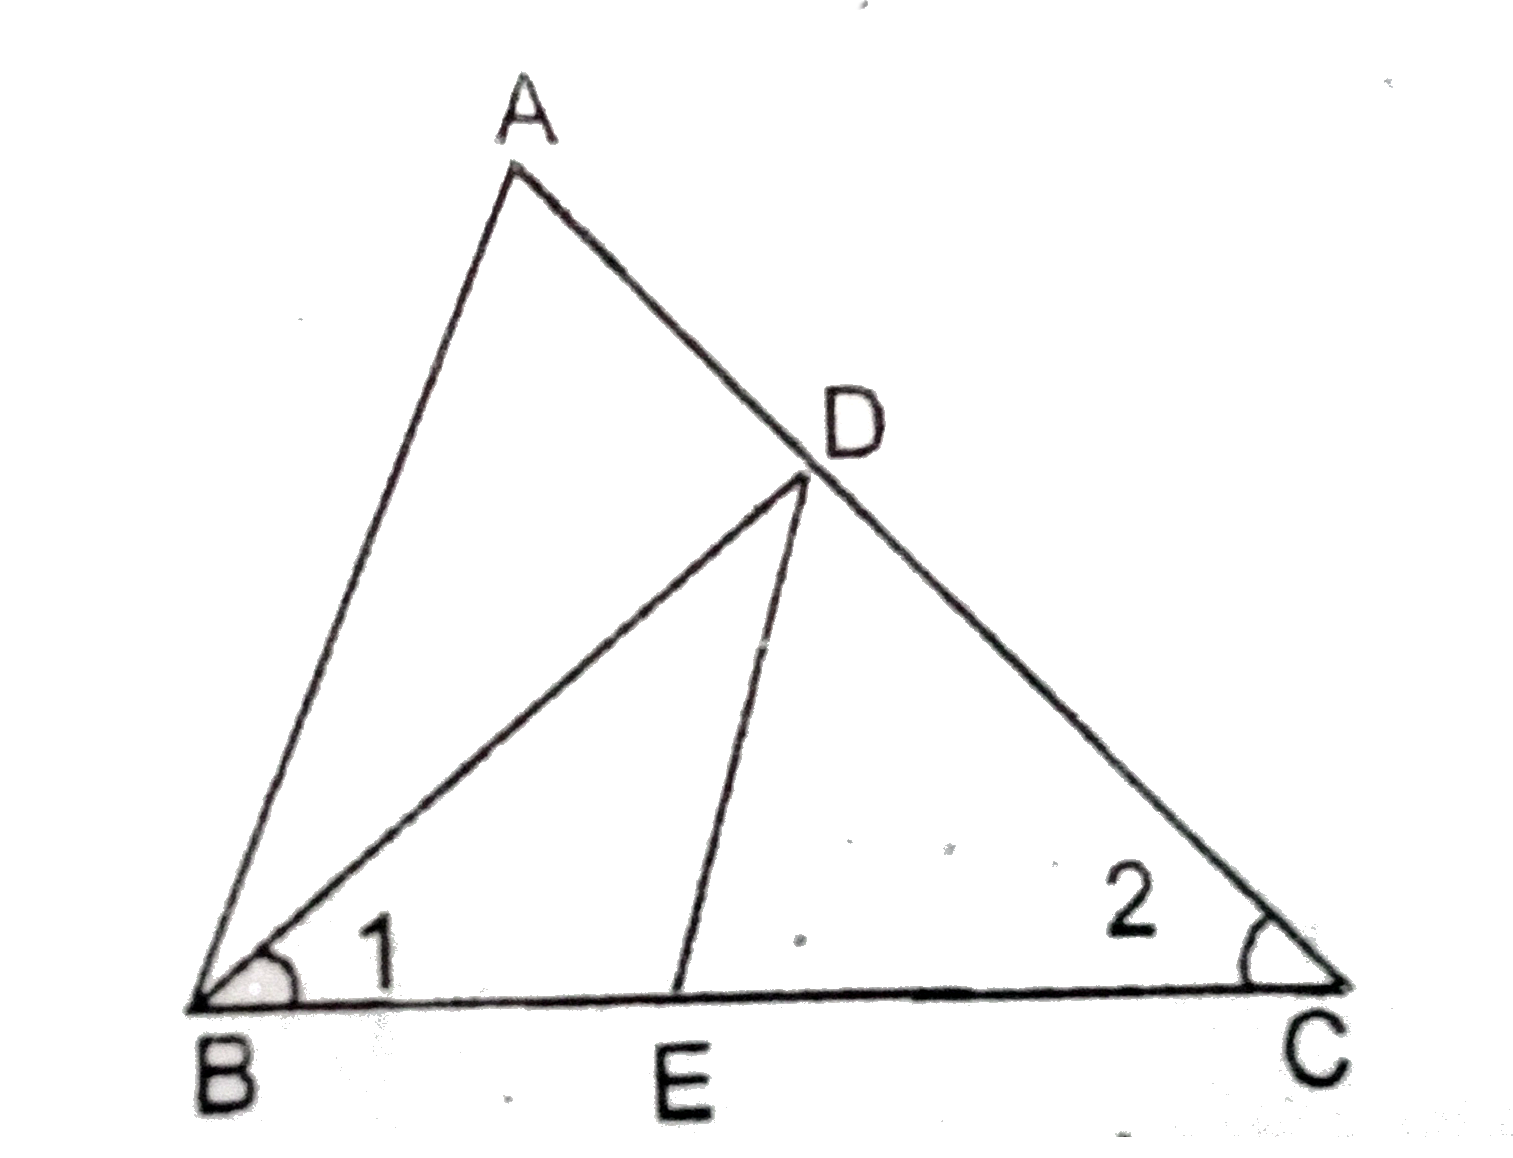 दिए गये चित्र में angle1=angle2 और (AC)/(BD)=(CB)/(CE) तो सिद्ध करें कि DeltaACB~DeltaDCE.